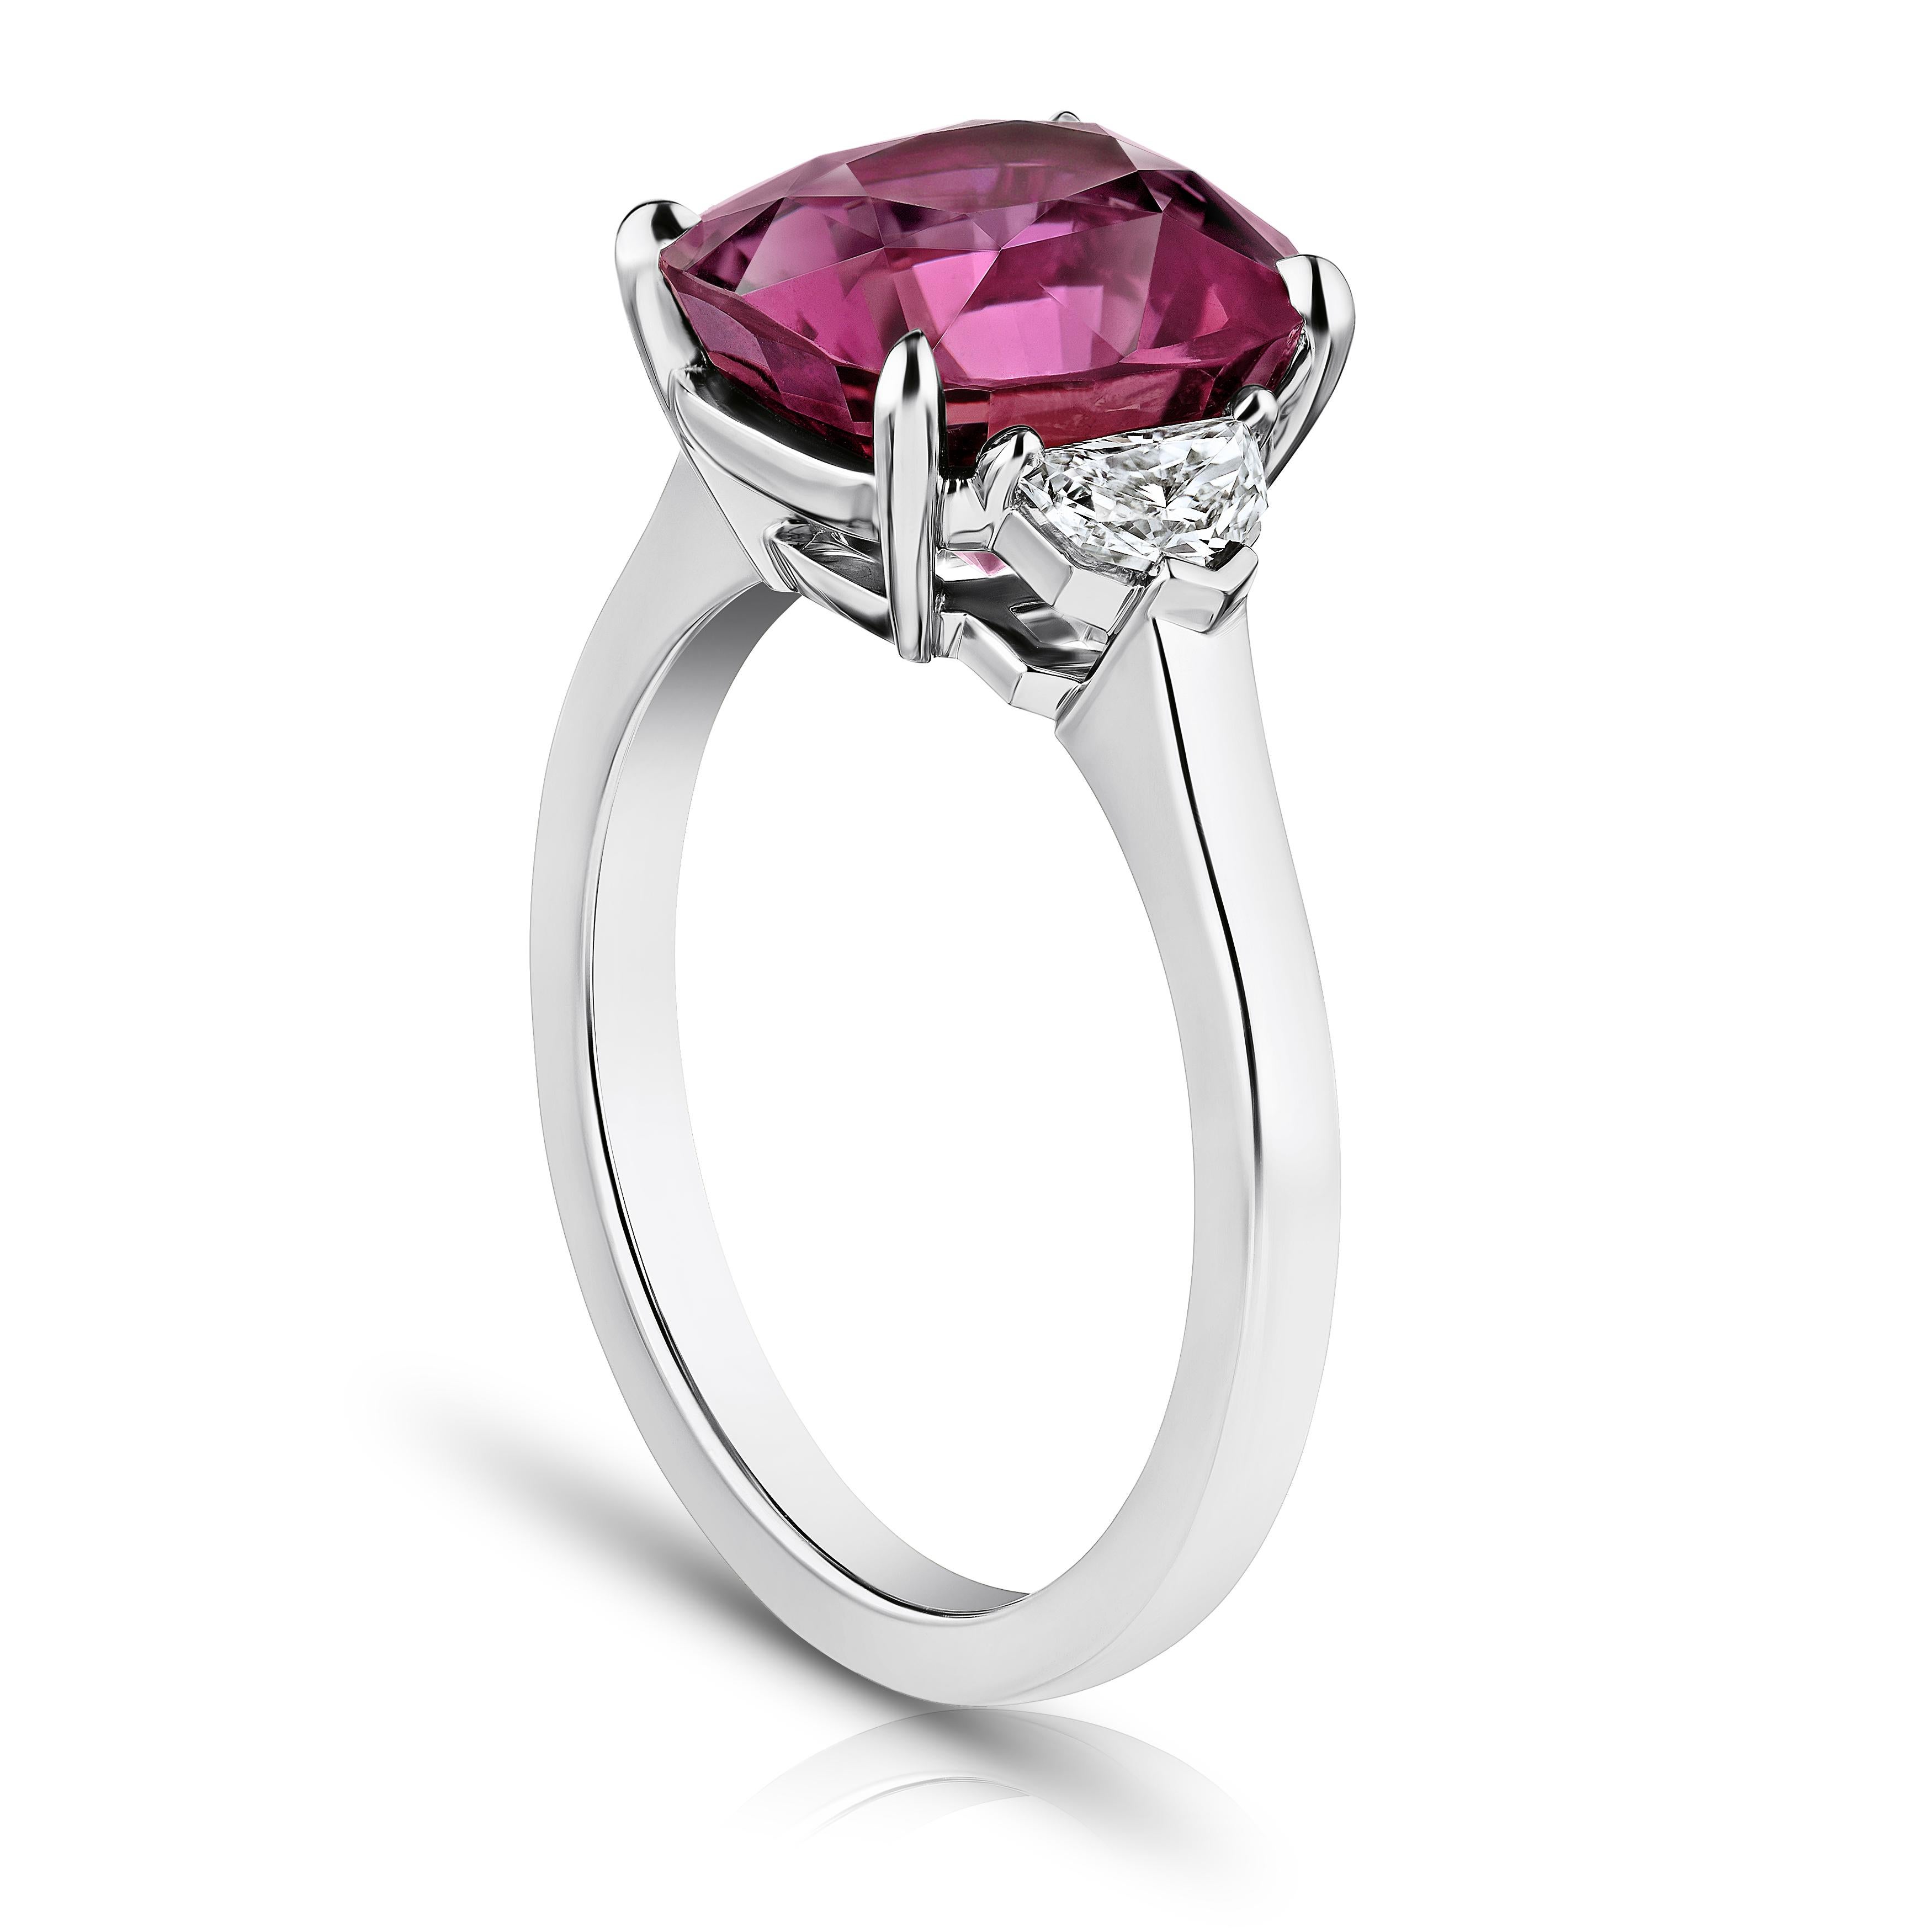 5.88 Karat kissenförmiger rosa-roter Saphir mit Diamanten im Epaulettenschliff von 0,34 Karat, gefasst in einem Platinring. Größe 7.  Die Anpassung des Rings an Ihre Fingergröße ist inbegriffen. 